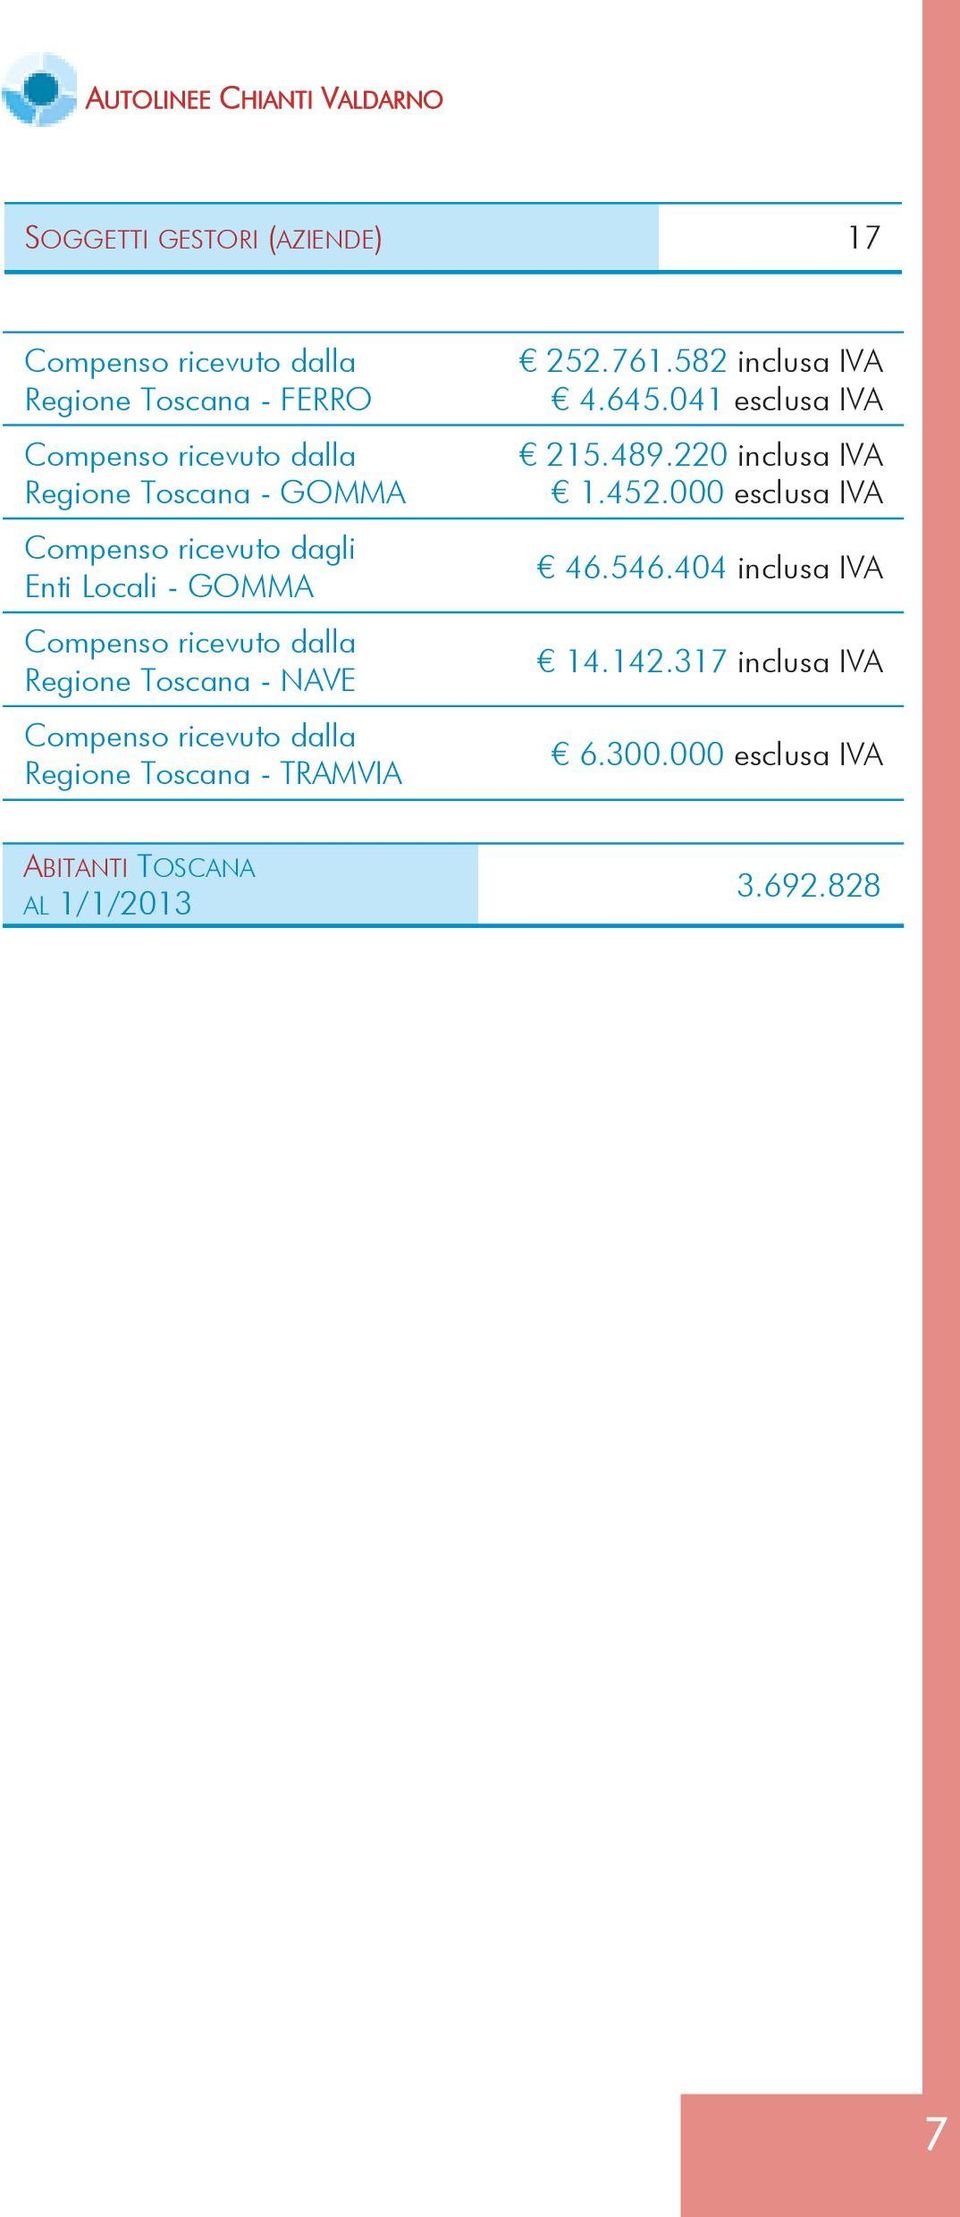 Compenso ricevuto dalla Regione Toscana - TRAMVIA 252.761.582 inclusa IVA 4.645.041 esclusa IVA 215.489.220 inclusa IVA 1.